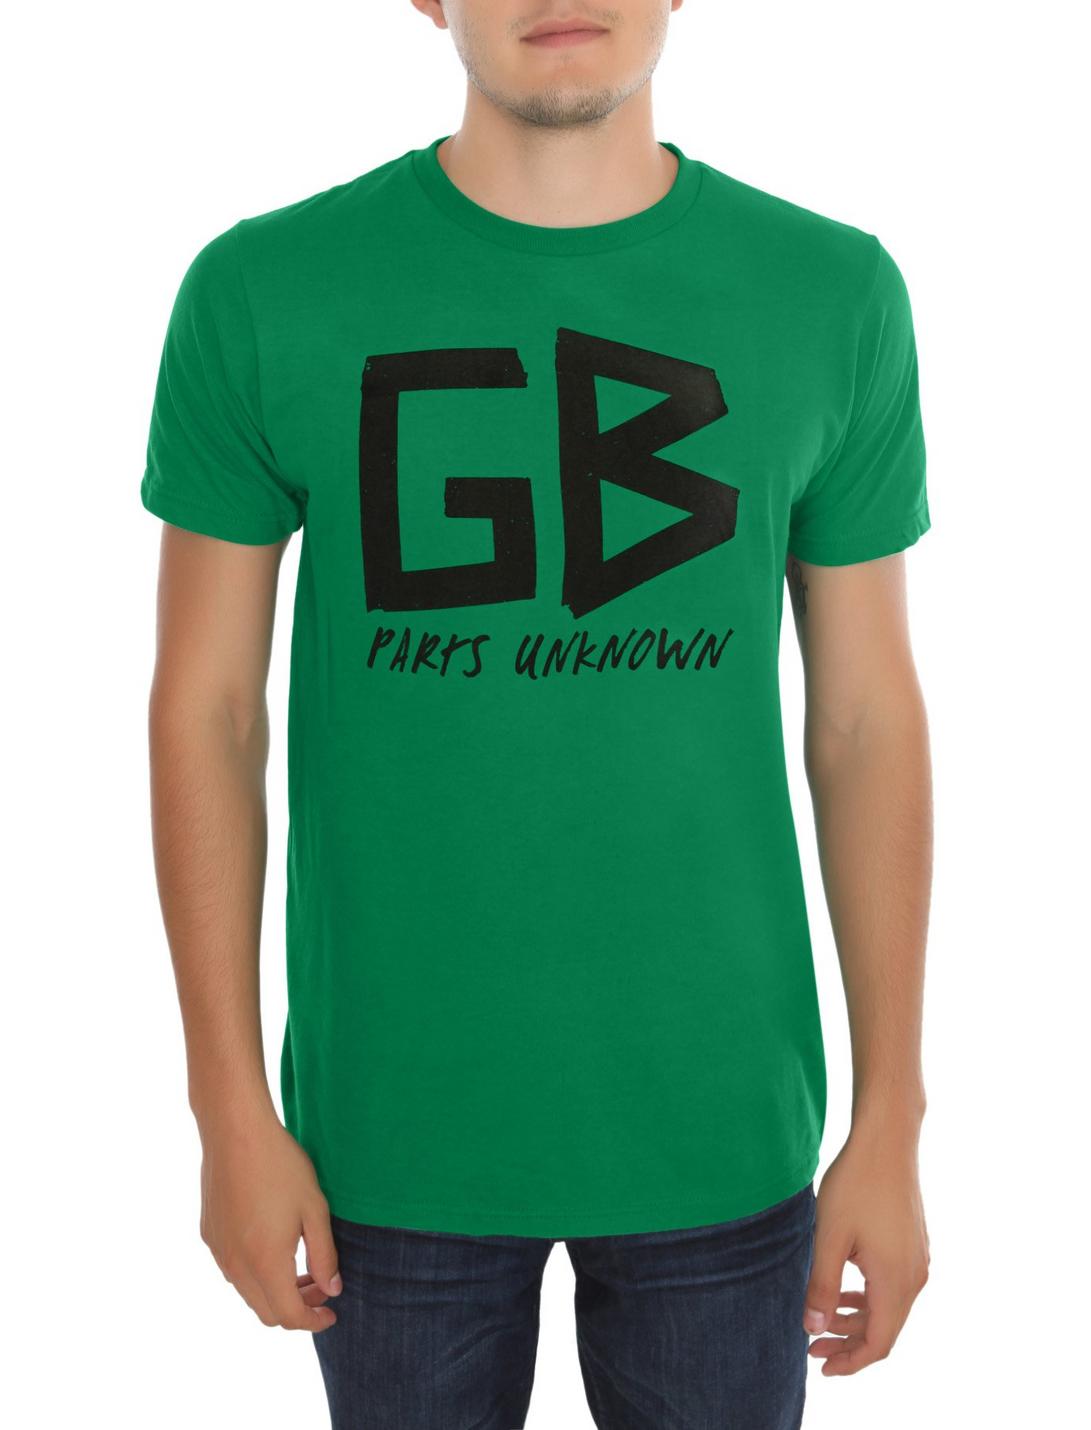 Charlotte Giga Riders Club T-shirt